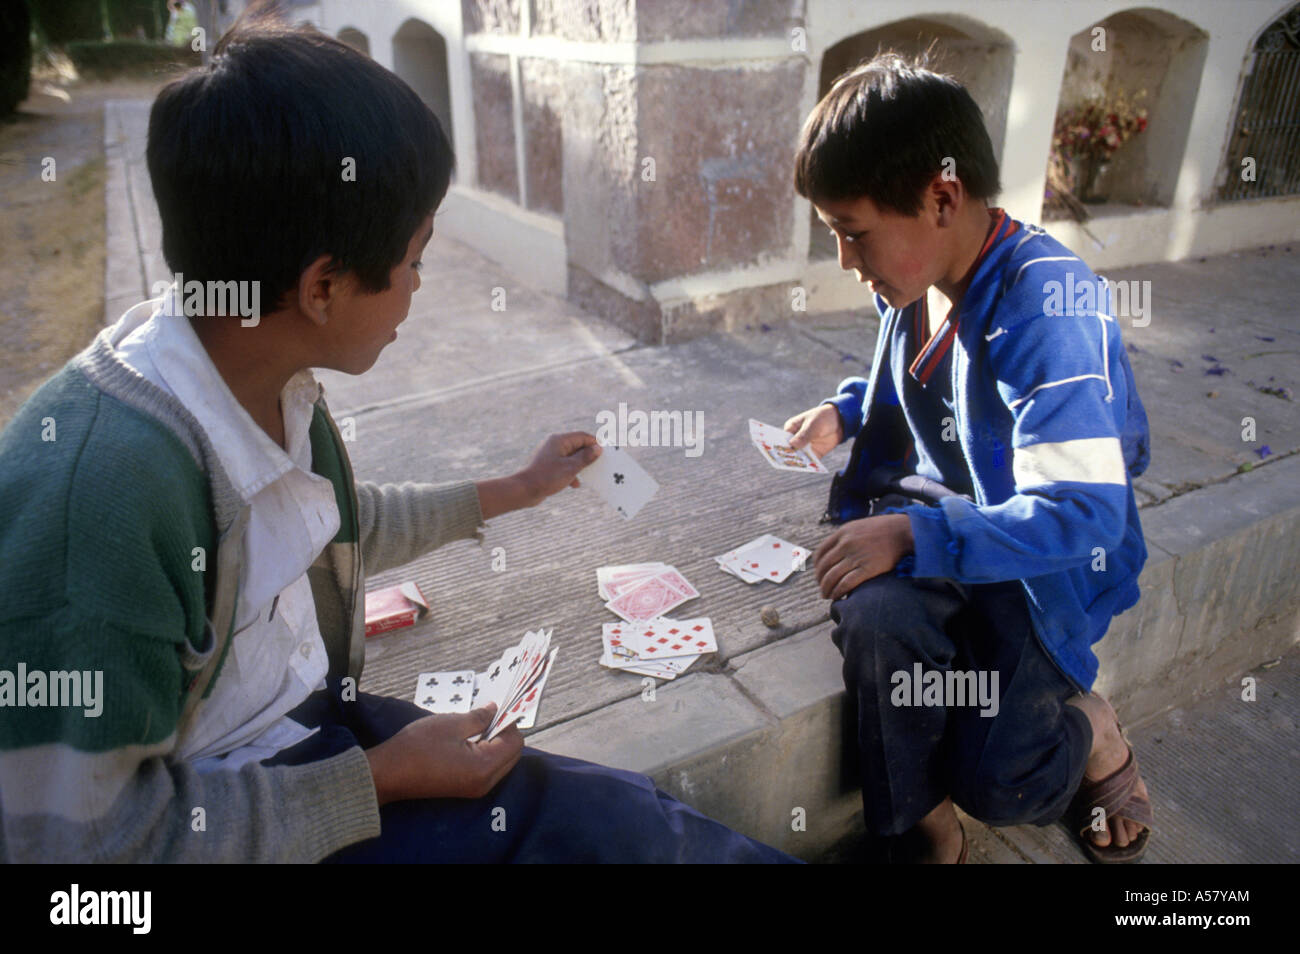 Painet ha2062 4154 jungen Playing Cards Cemetary Sucre Bolivien Land entwickeln Nation wirtschaftlich weniger entwickelte Kultur Stockfoto